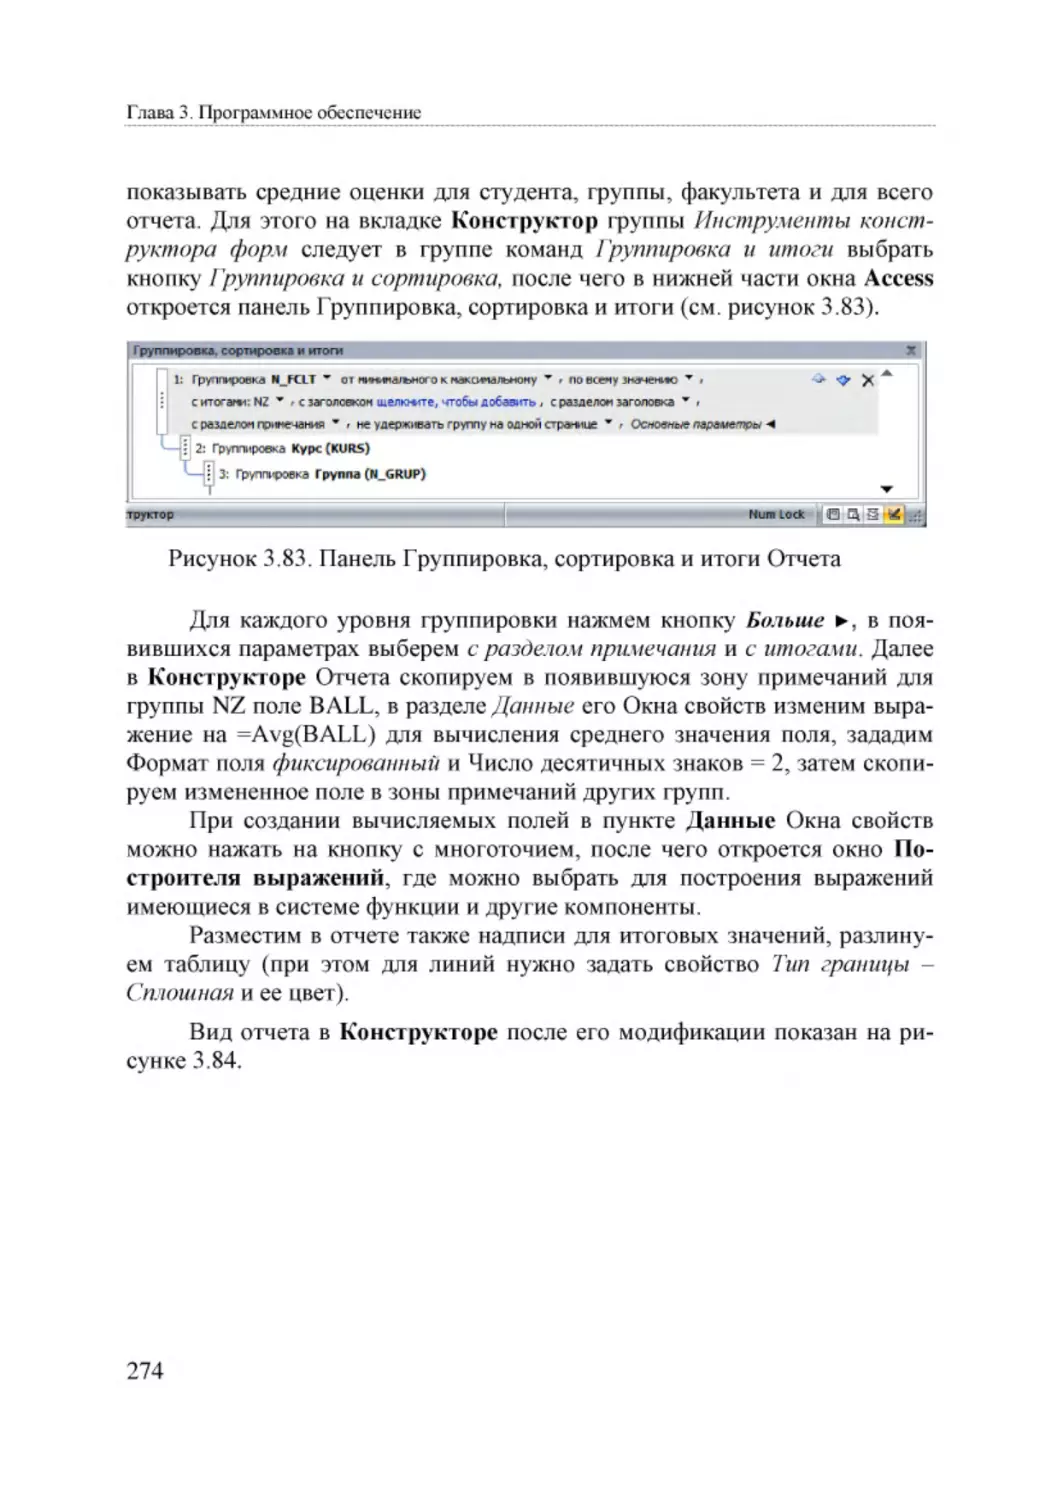 Informatika_Uchebnik_dlya_vuzov_2010 274